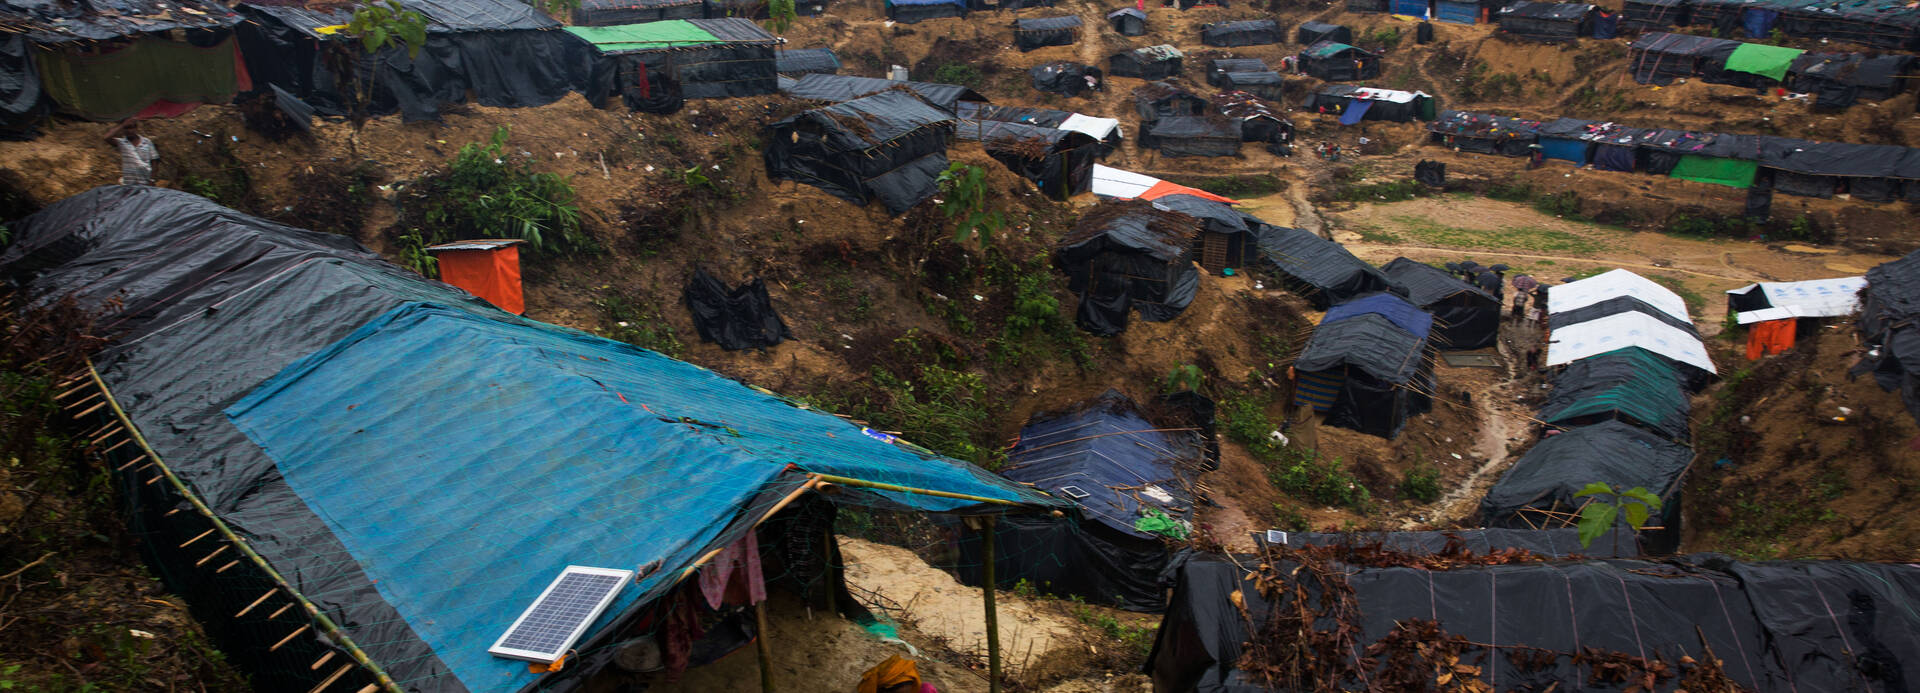 Geflüchtetencamp der Rohingya in Bangladesch